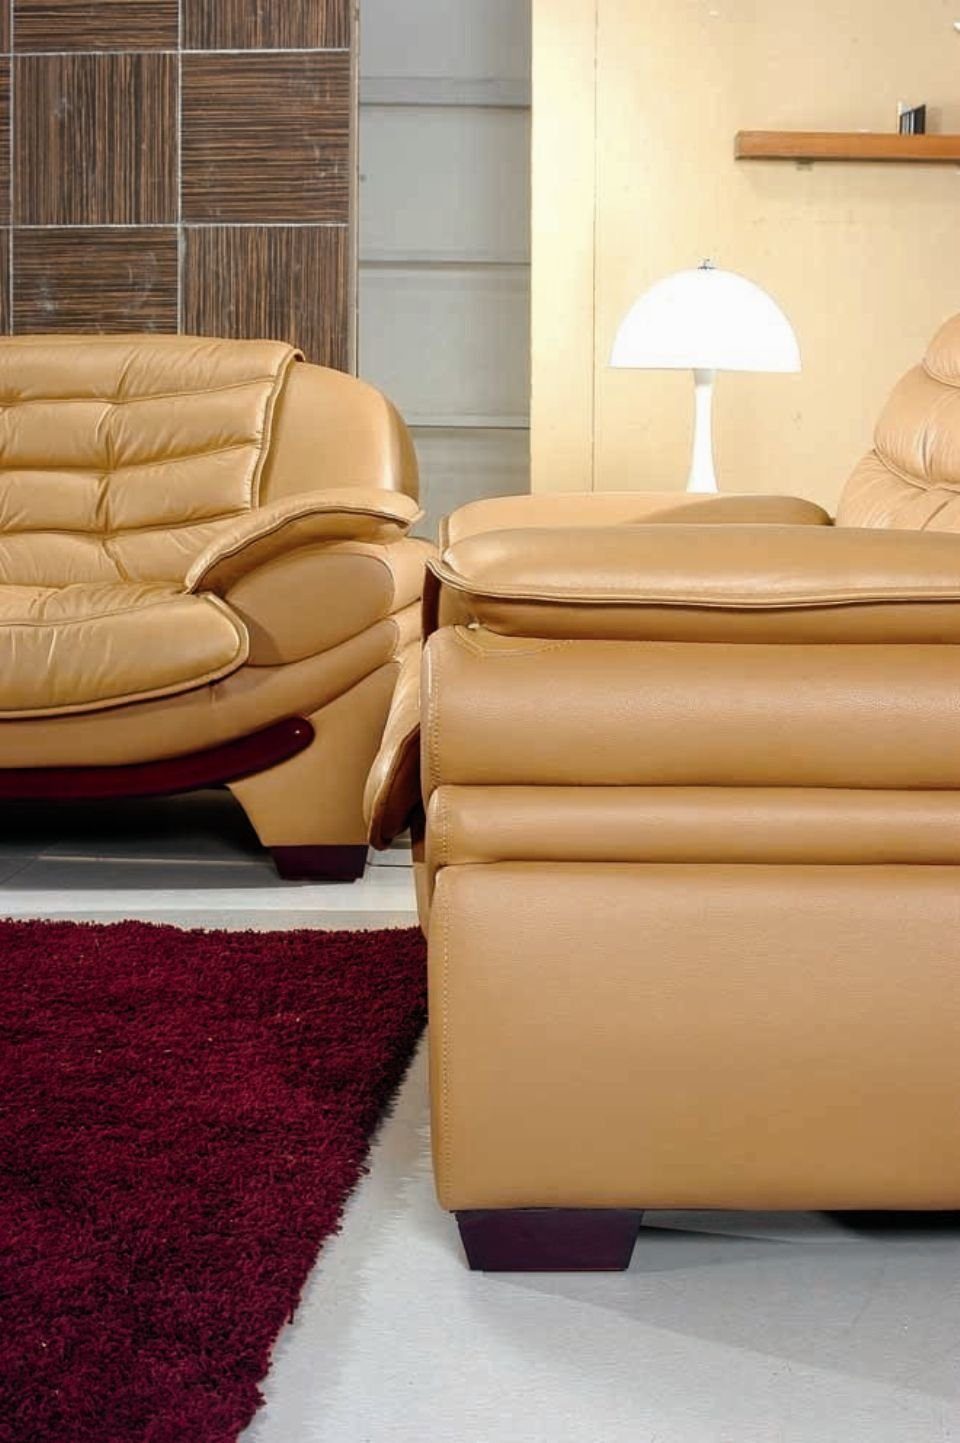 JVmoebel Sofa Sofagarnitur Couch Polster Wohnzimmer Leder in 3+2+1 Europe Sitz Set, Made